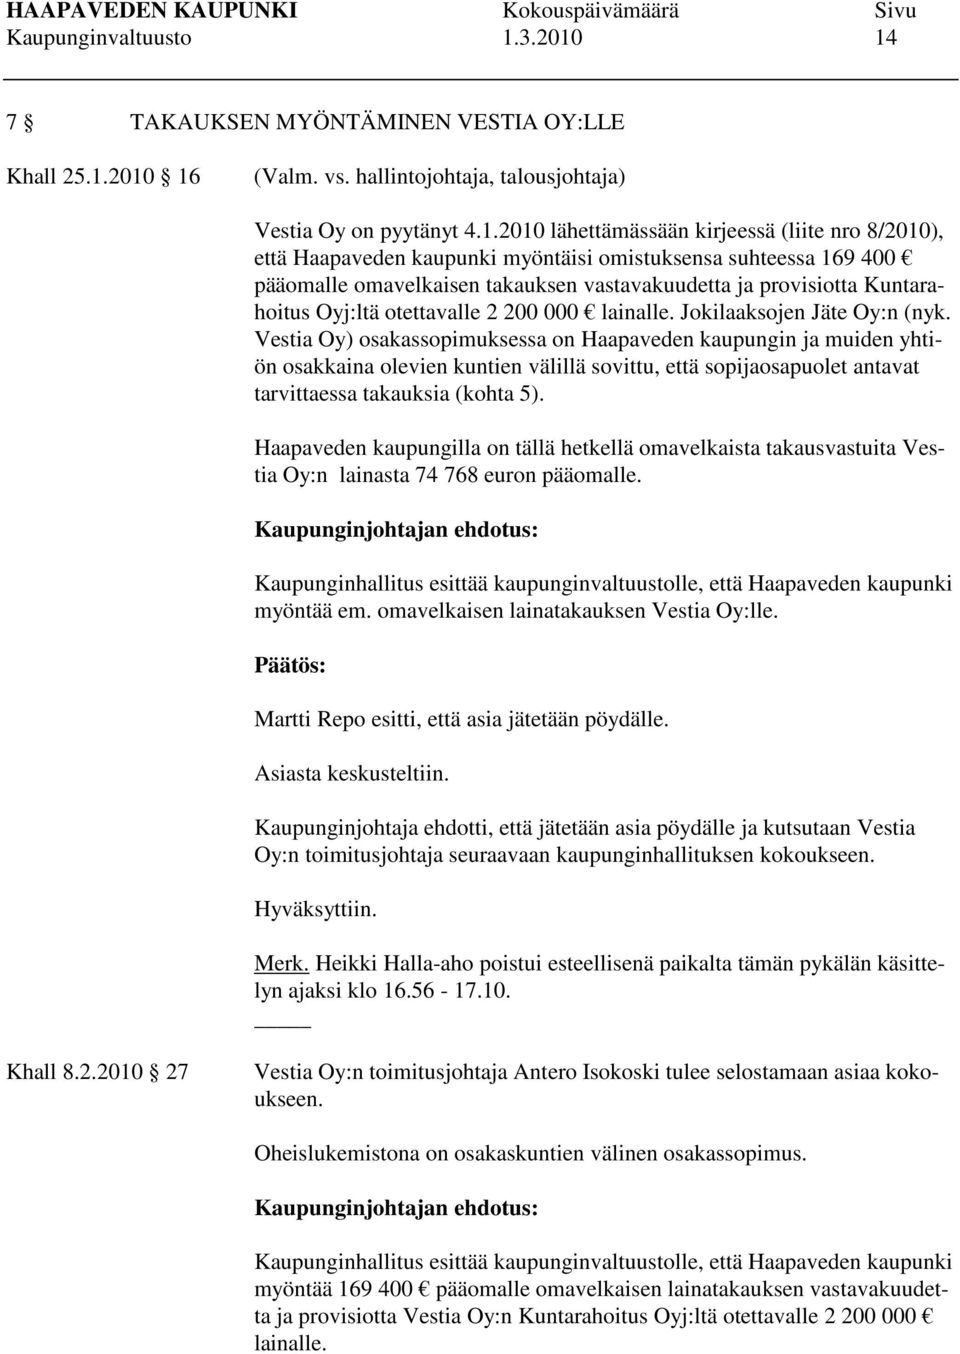 14 7 TAKAUKSEN MYÖNTÄMINEN VESTIA OY:LLE Khall 25.1.2010 16 (Valm. vs. hallintojohtaja, talousjohtaja) Vestia Oy on pyytänyt 4.1.2010 lähettämässään kirjeessä (liite nro 8/2010), että Haapaveden